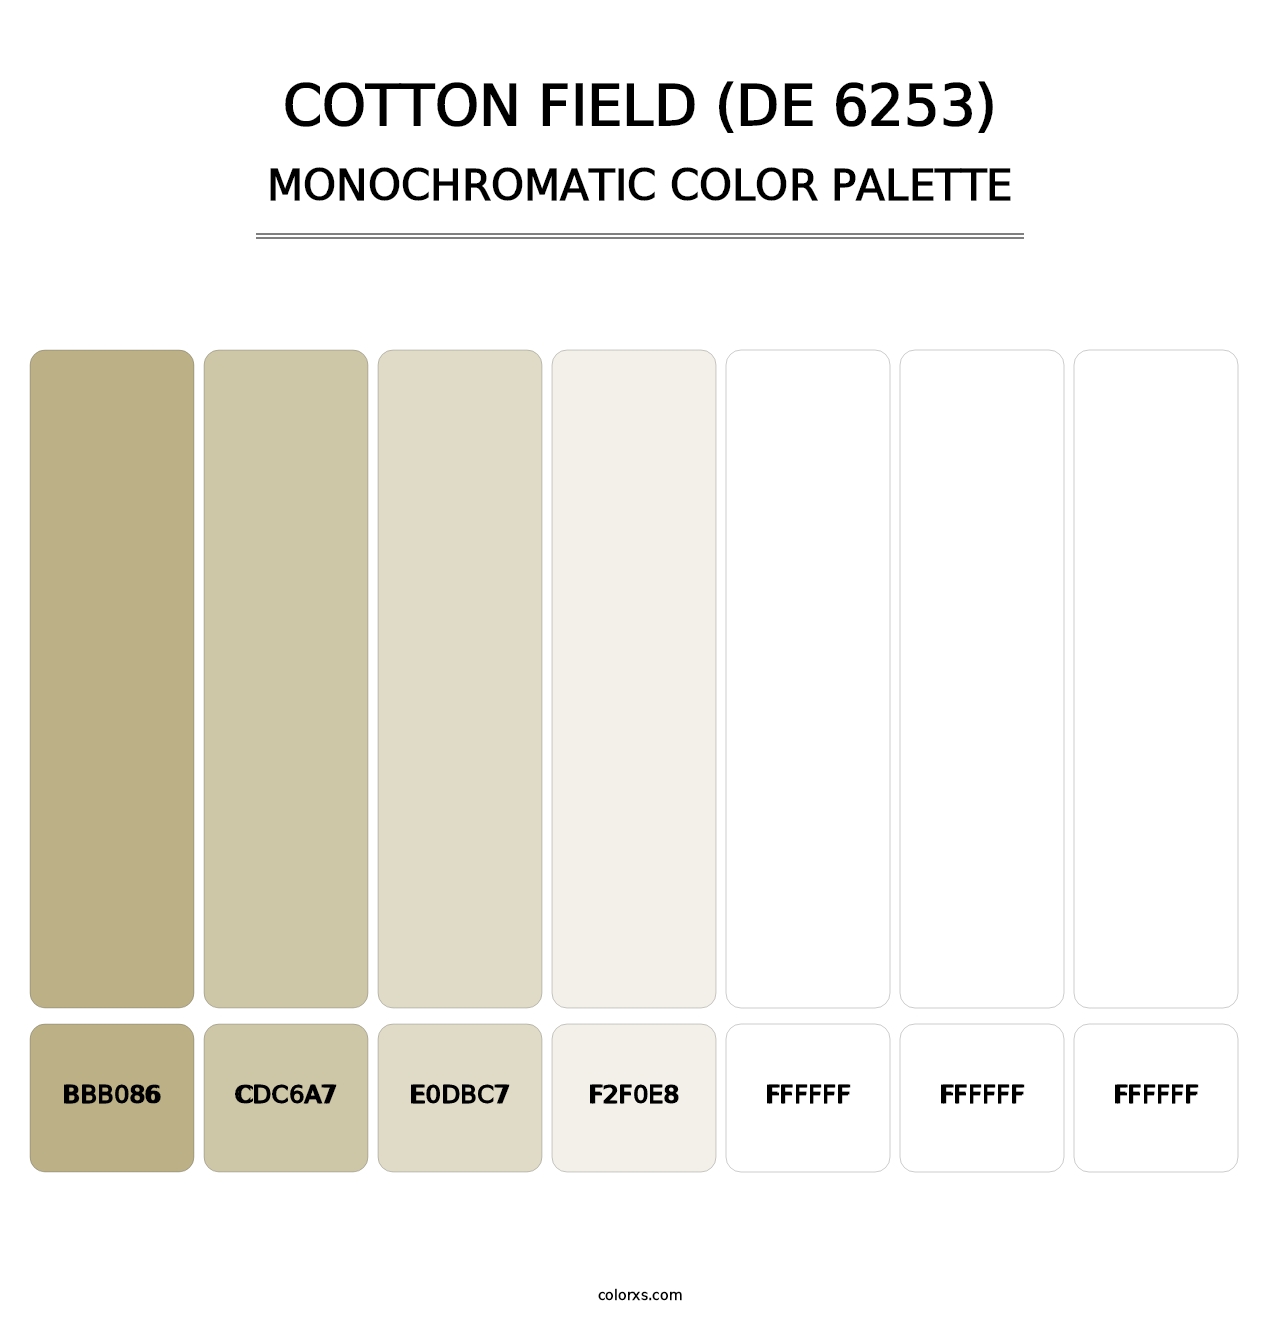 Cotton Field (DE 6253) - Monochromatic Color Palette